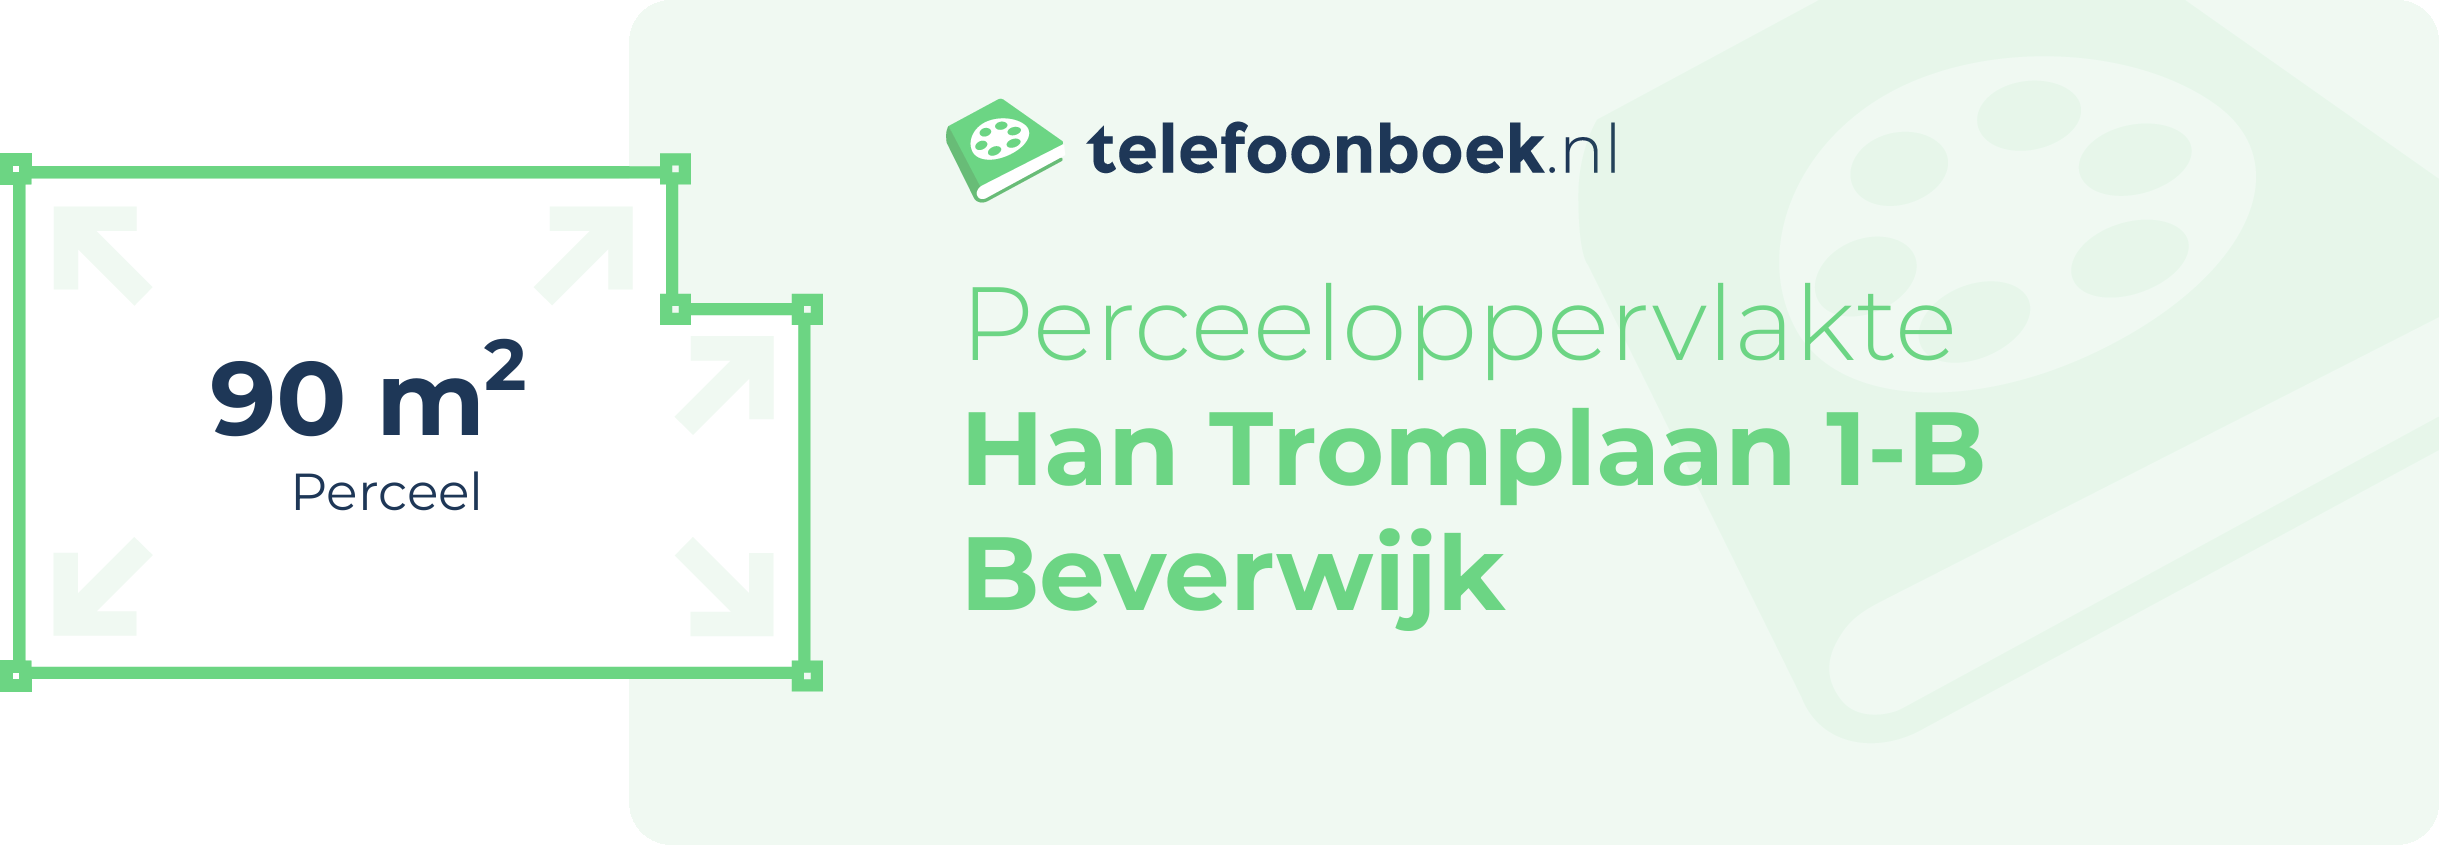 Perceeloppervlakte Han Tromplaan 1-B Beverwijk